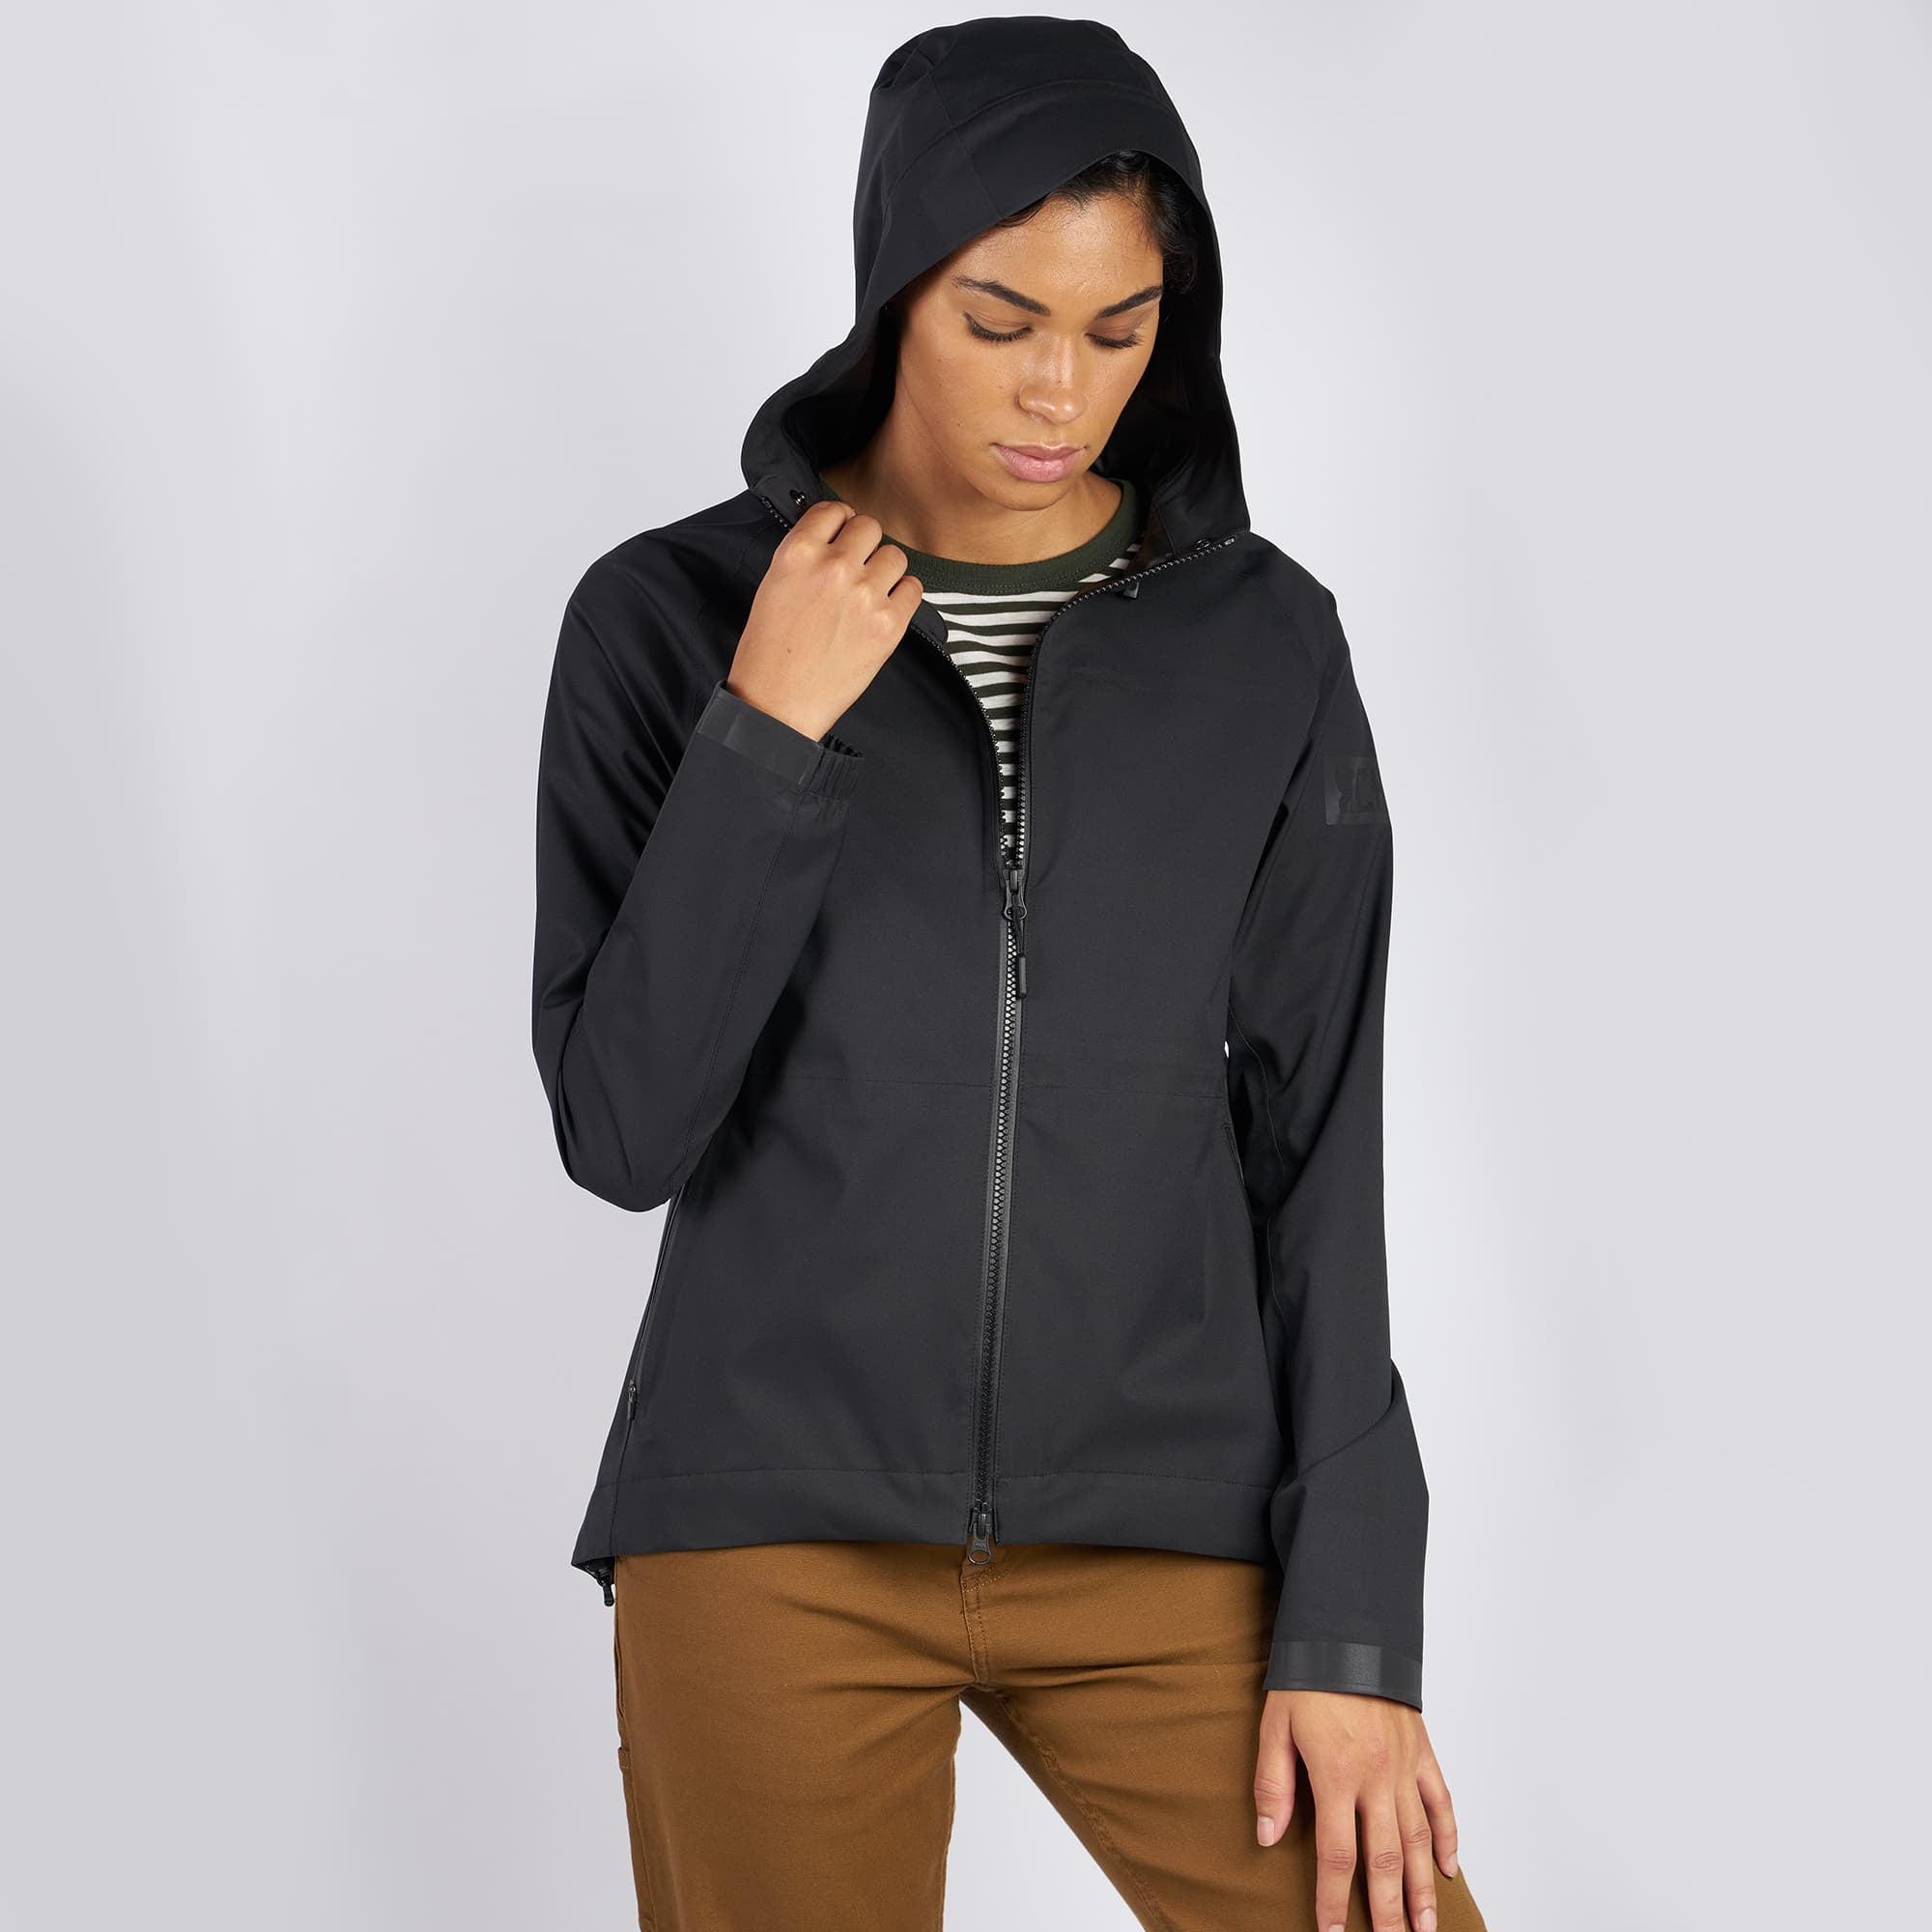 Women's waterproof jacket in black worn by a woman full front view